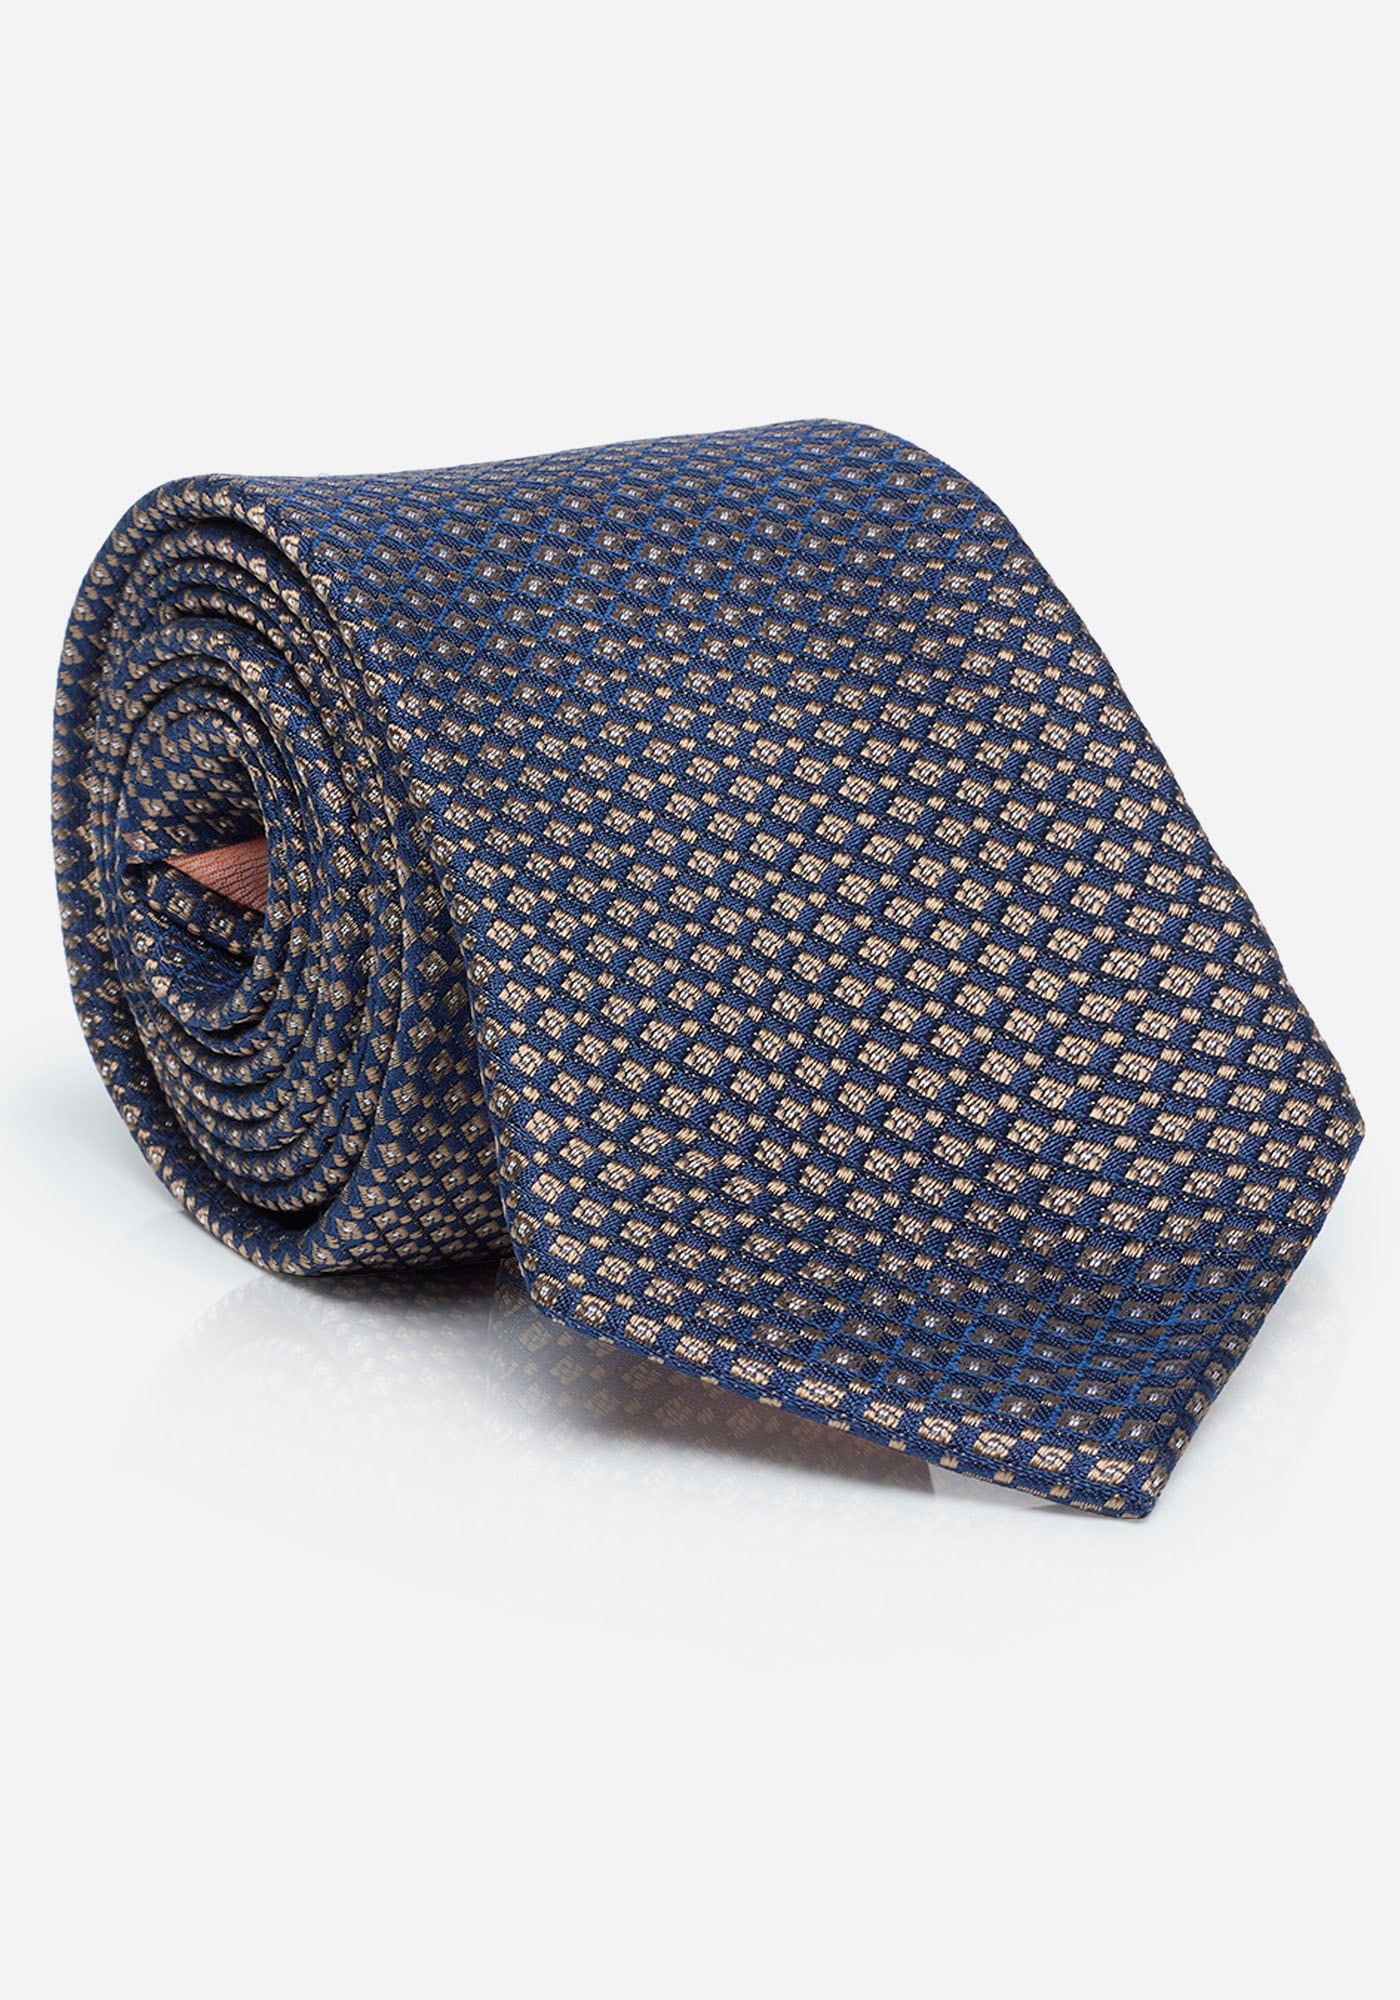 MONTI Krawatte »LIANO«, mit Wolleinlage für angenehmes Tragegefühl und Formstabilität